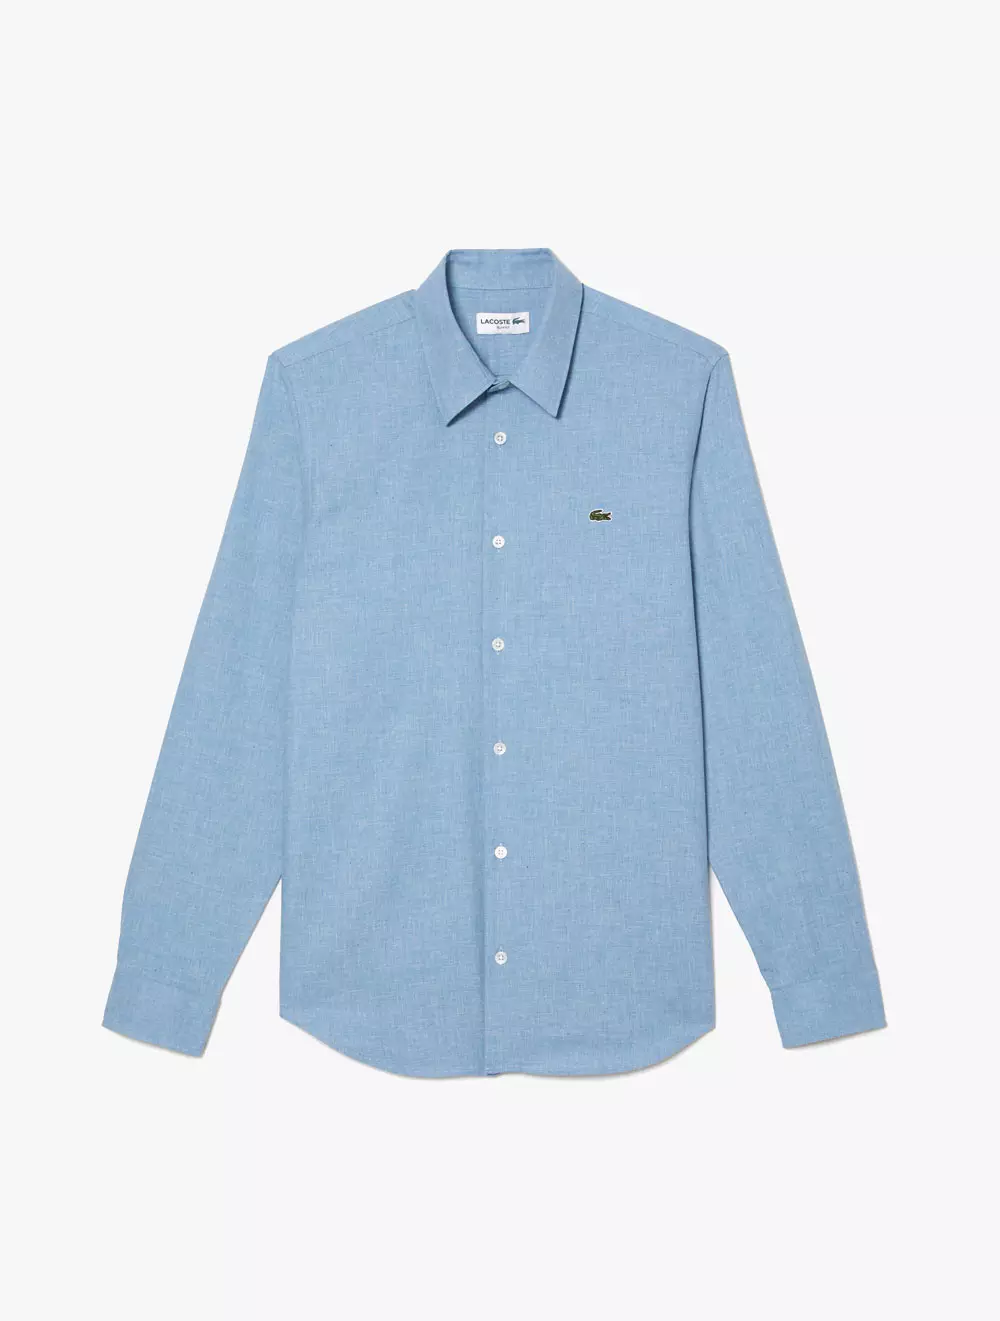 Jual Lacoste Men’s Lacoste Slim Fit Cotton Chambray Shirt - Blue ...